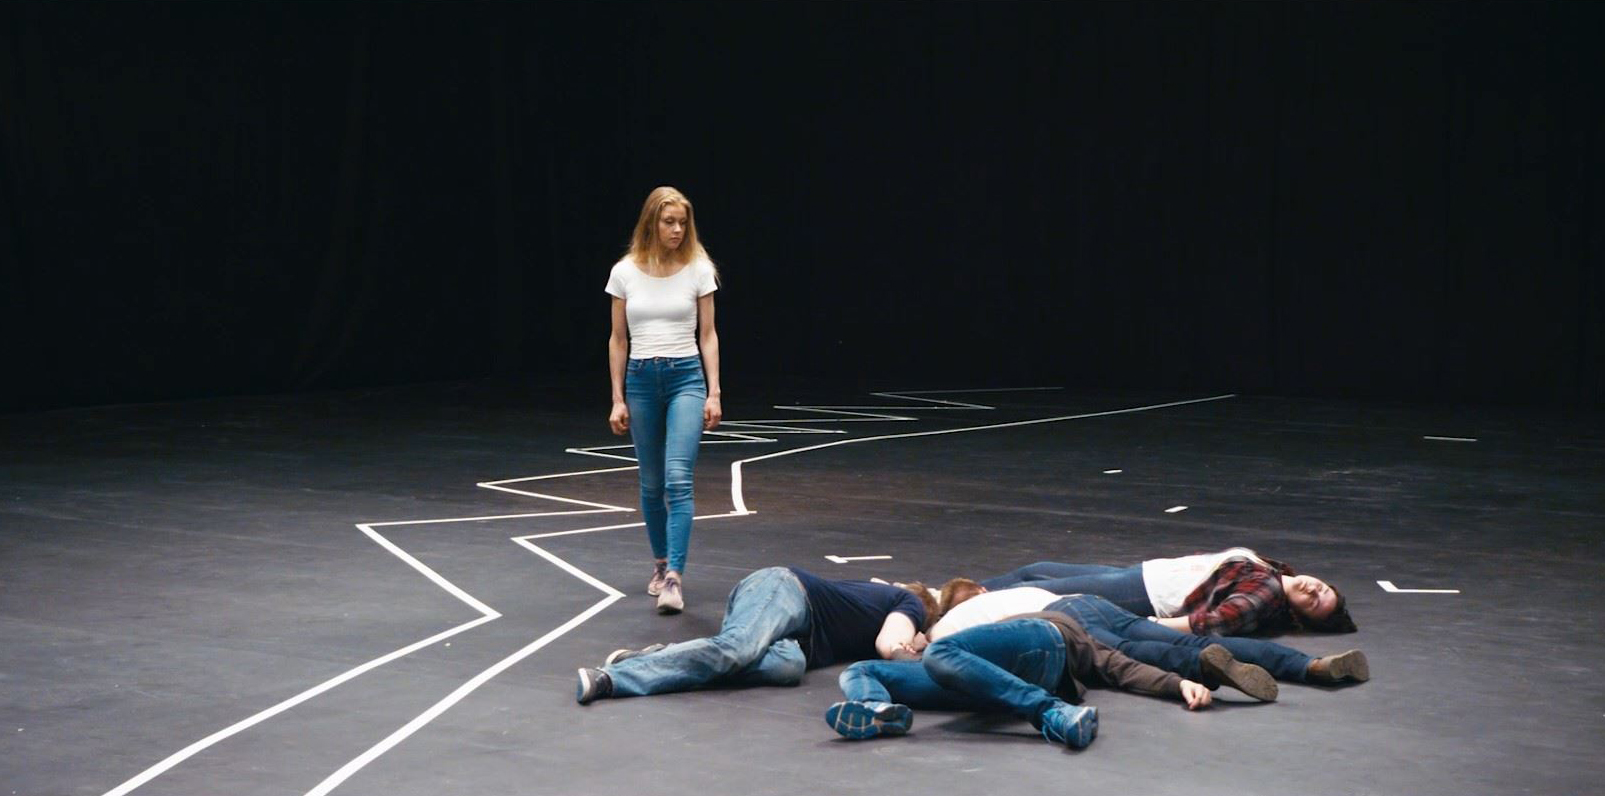 Na scéně bez pozadí stojí osoba a vedle ní leží na zemi čtyři osoby. Na podlaze jsou lepící páskou vyznačené různé linie.